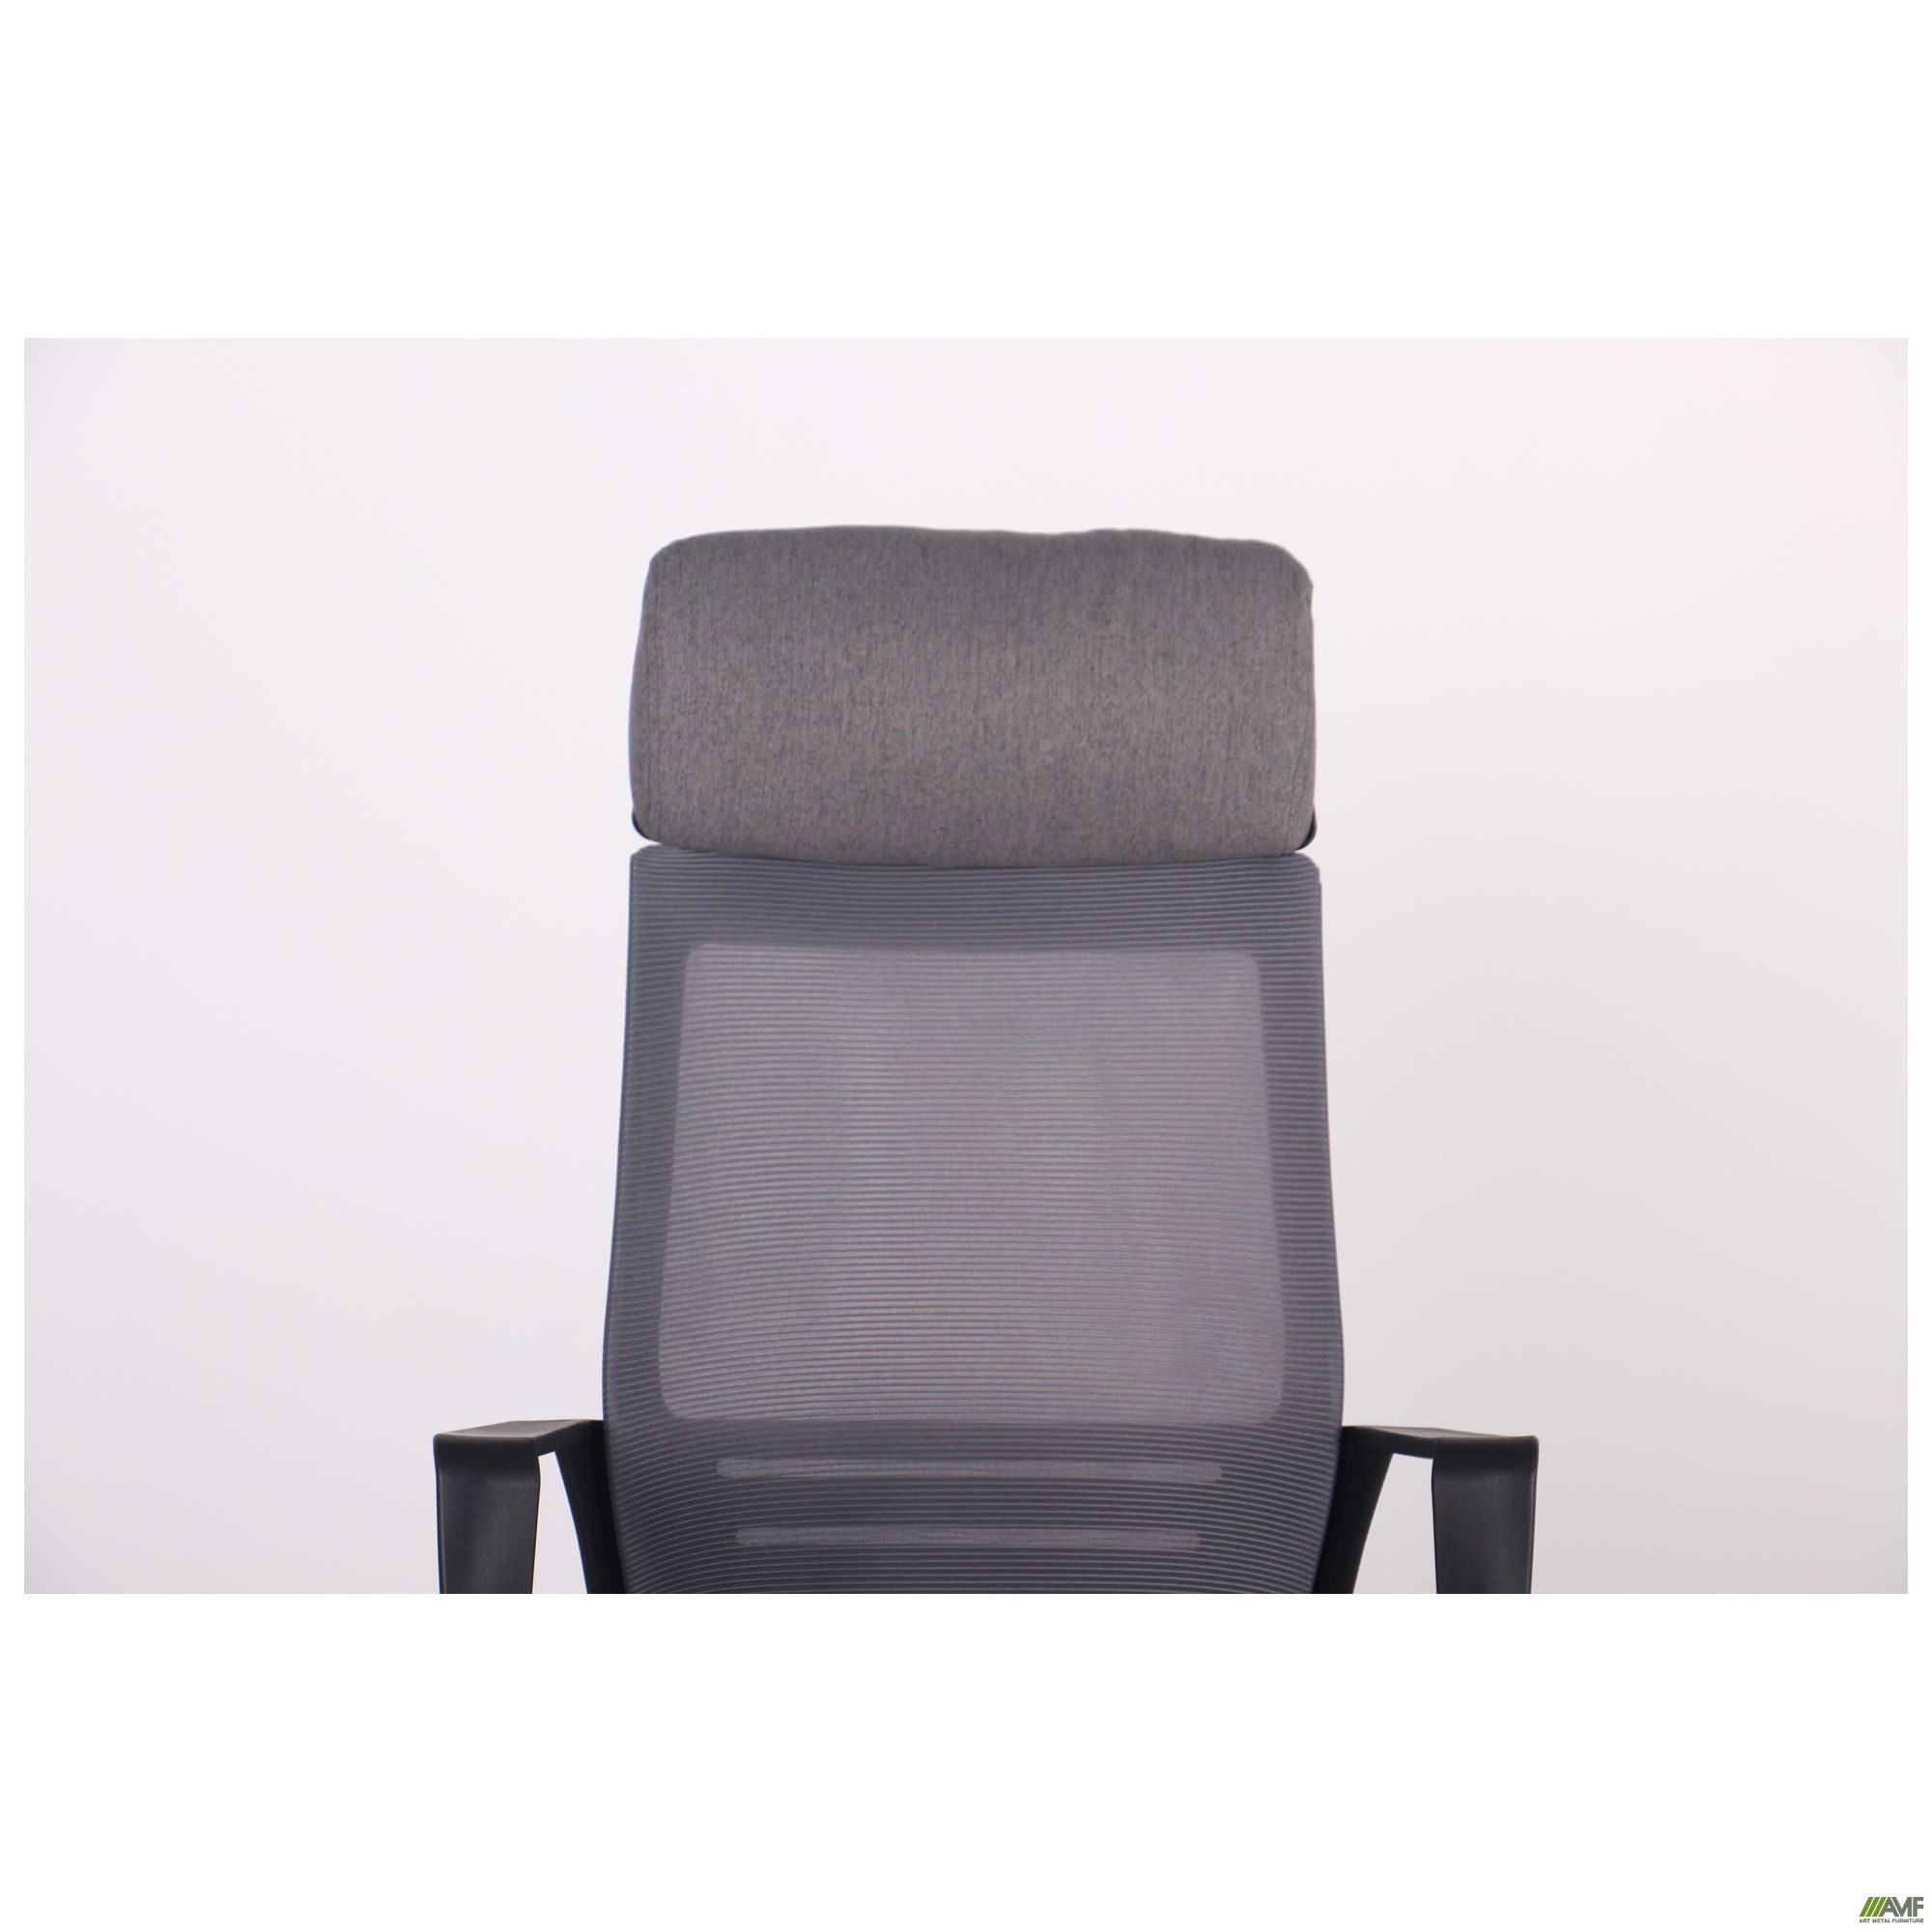 Фото 6 - Кресло Twist black серый 